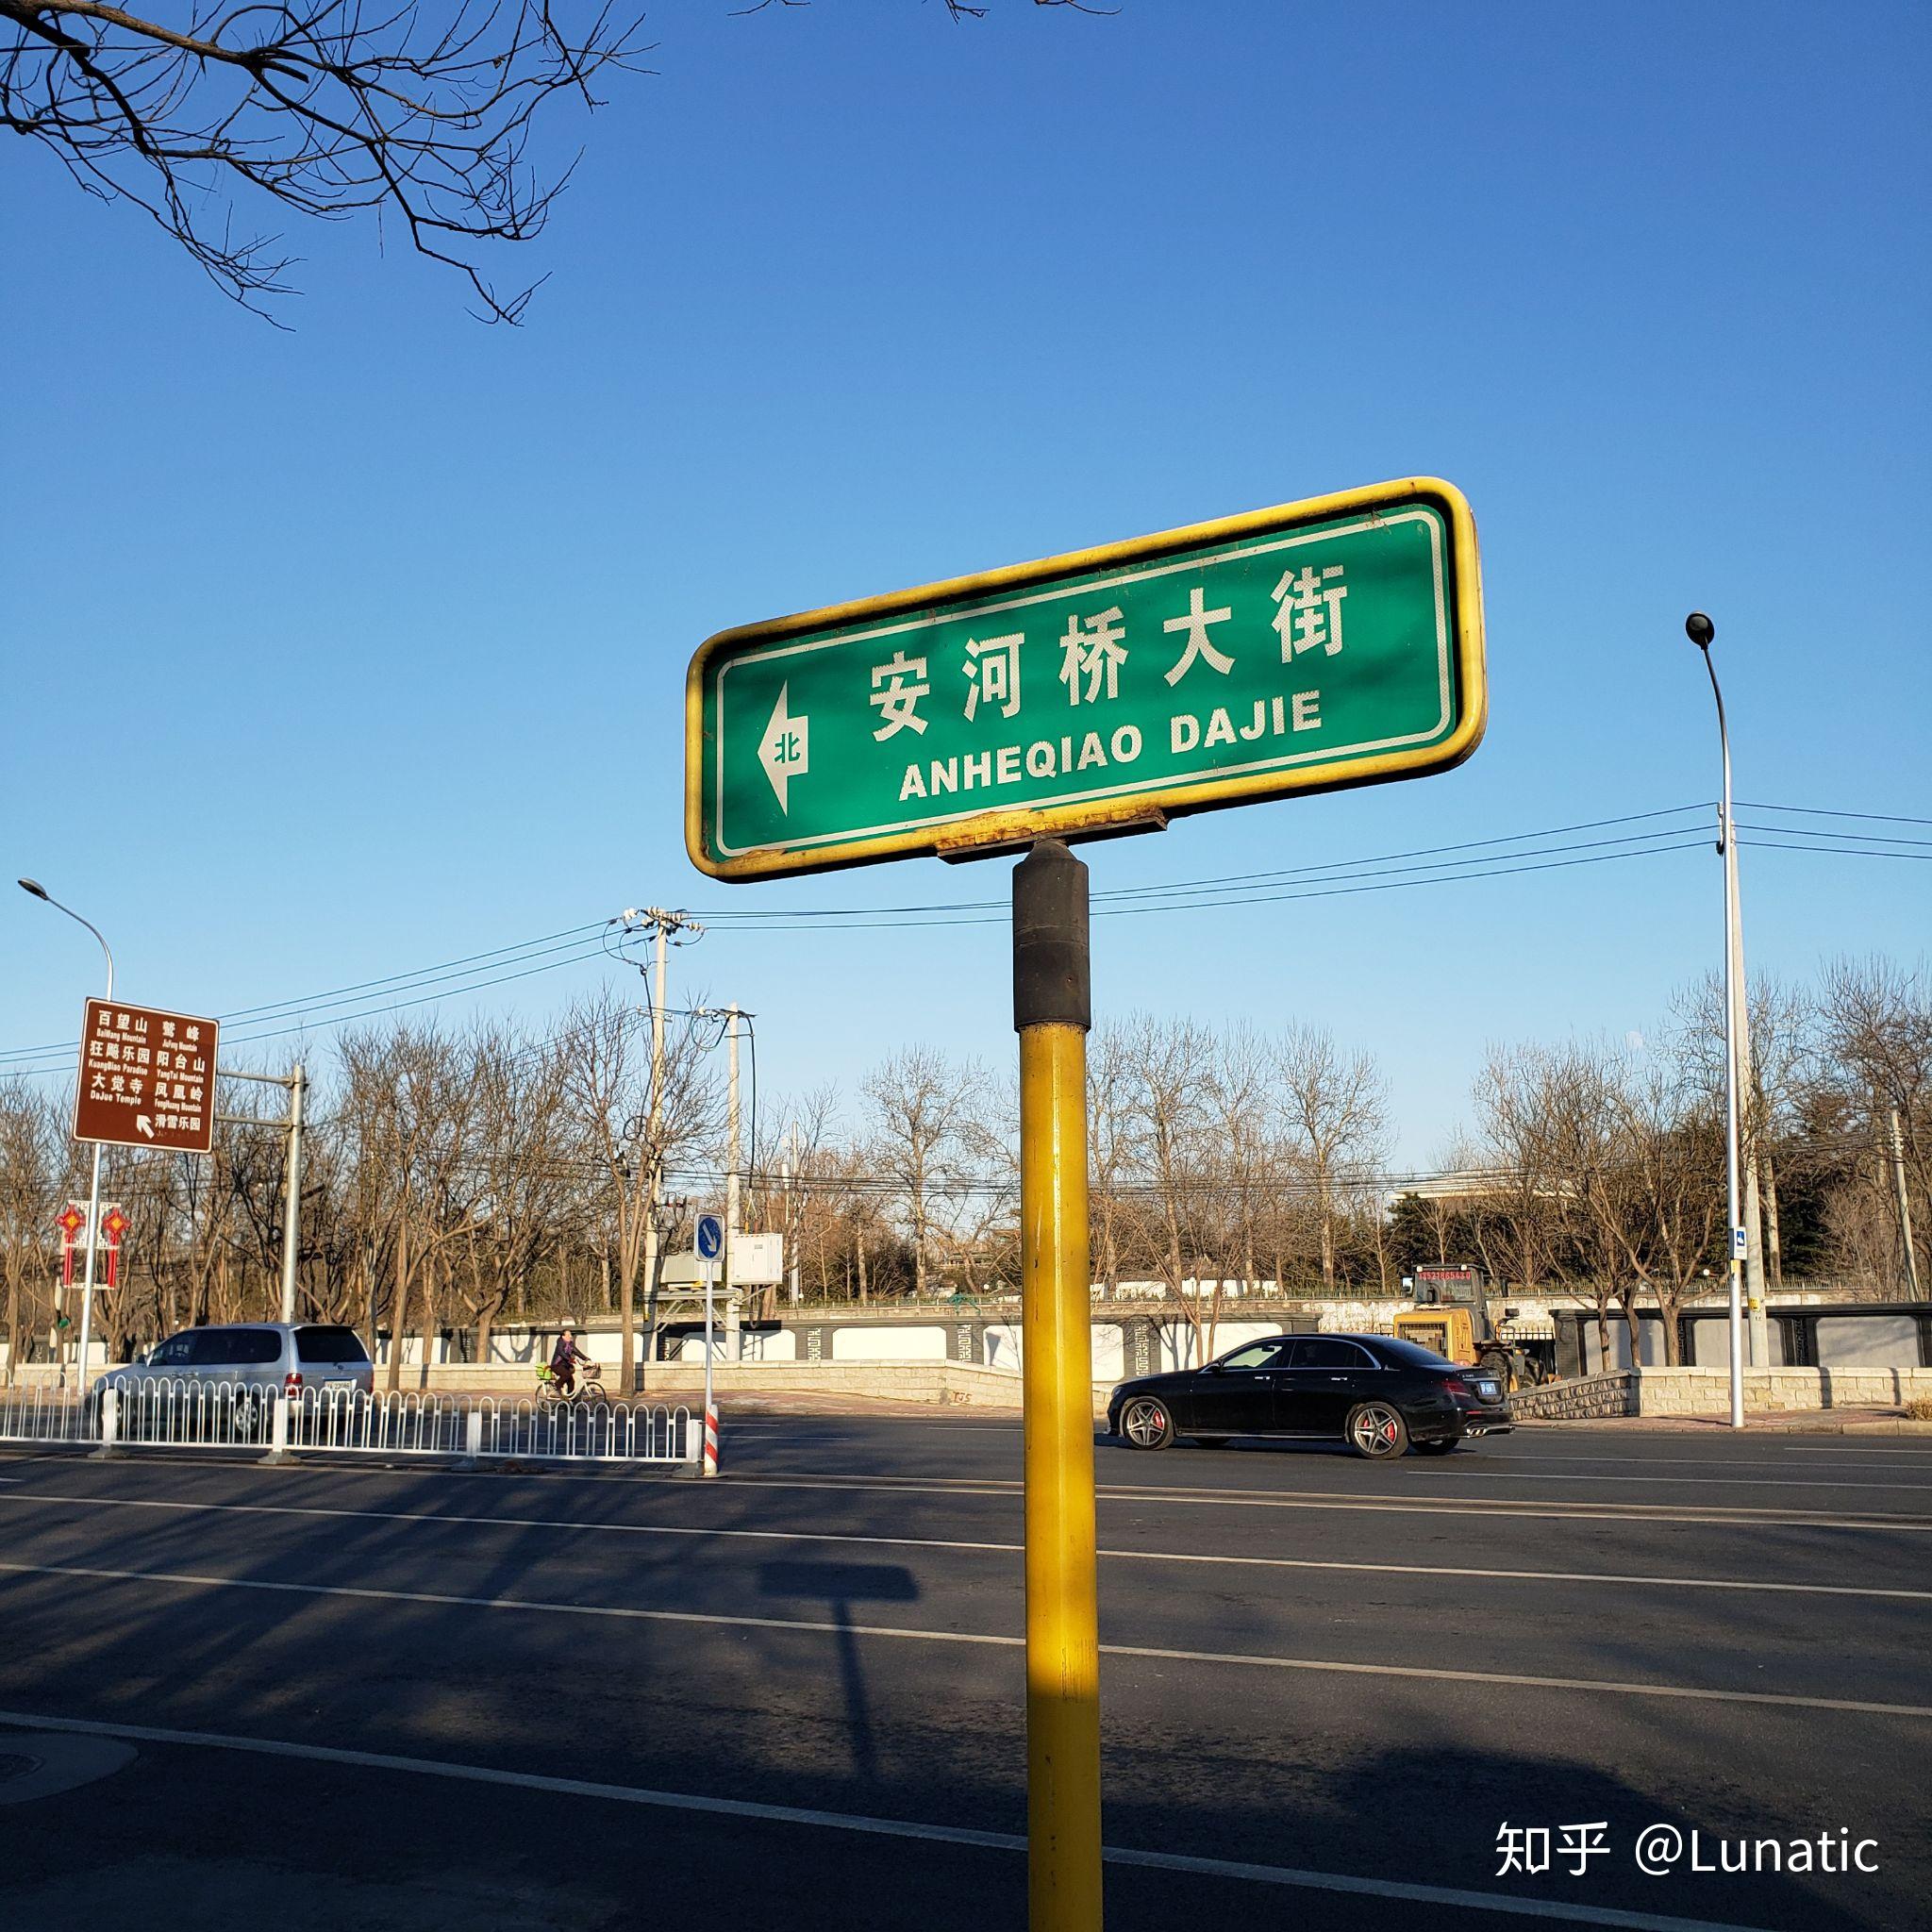 北京安河桥攻略,北京安河桥门票/游玩攻略/地址/图片/门票价格【携程攻略】